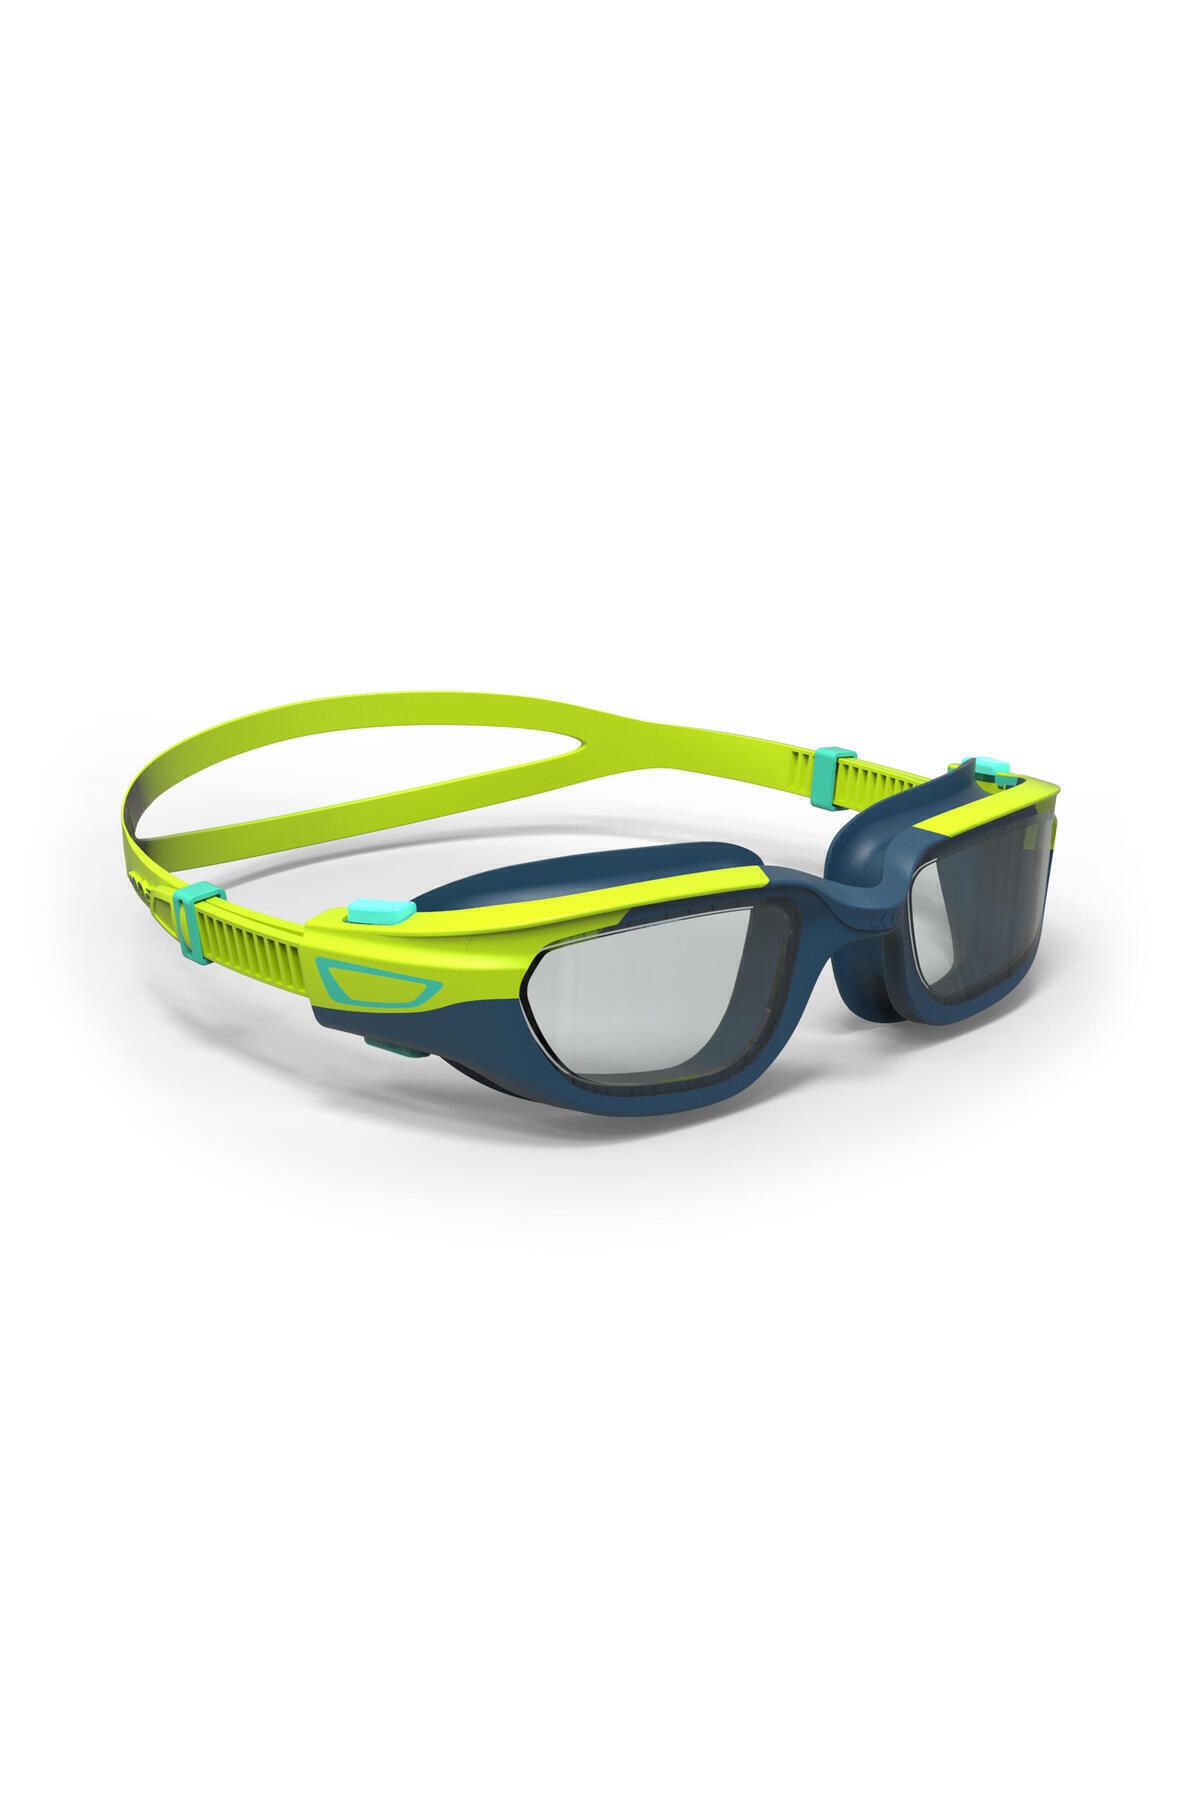 Decathlon Nabaiji Yüzücü Gözlüğü - Sarı / Mavi - Şeffaf Camlar - S Boy - Spırıt